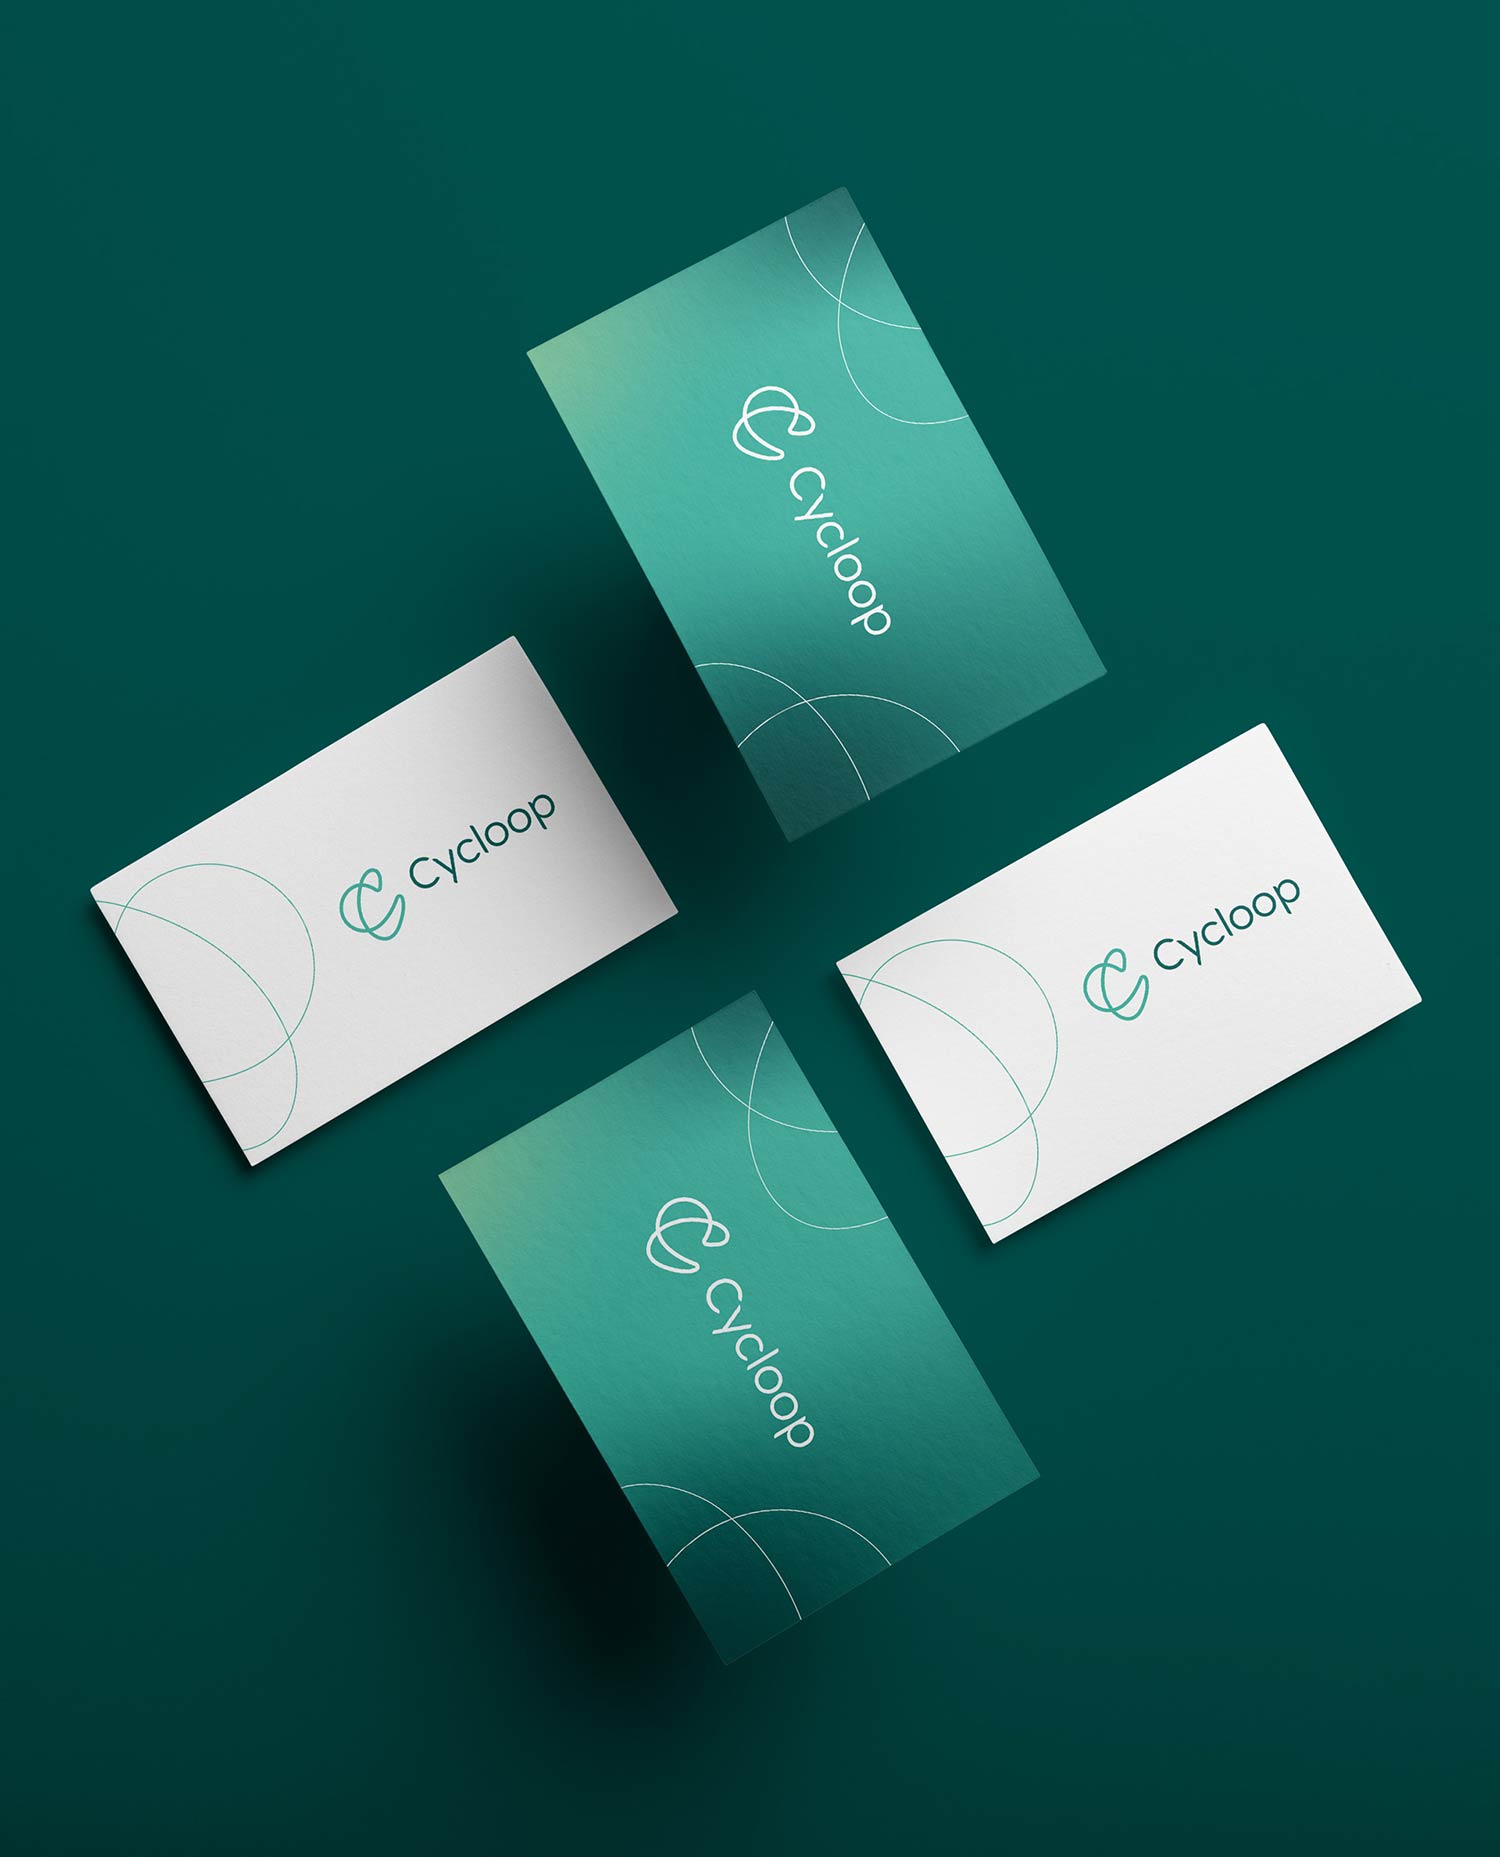 Logo e brand identity di Cycloop realizzato da SEBA! grafico di Gravellona Toce nel VCO di quattro diversi biglietti da visita verdi e bianchi